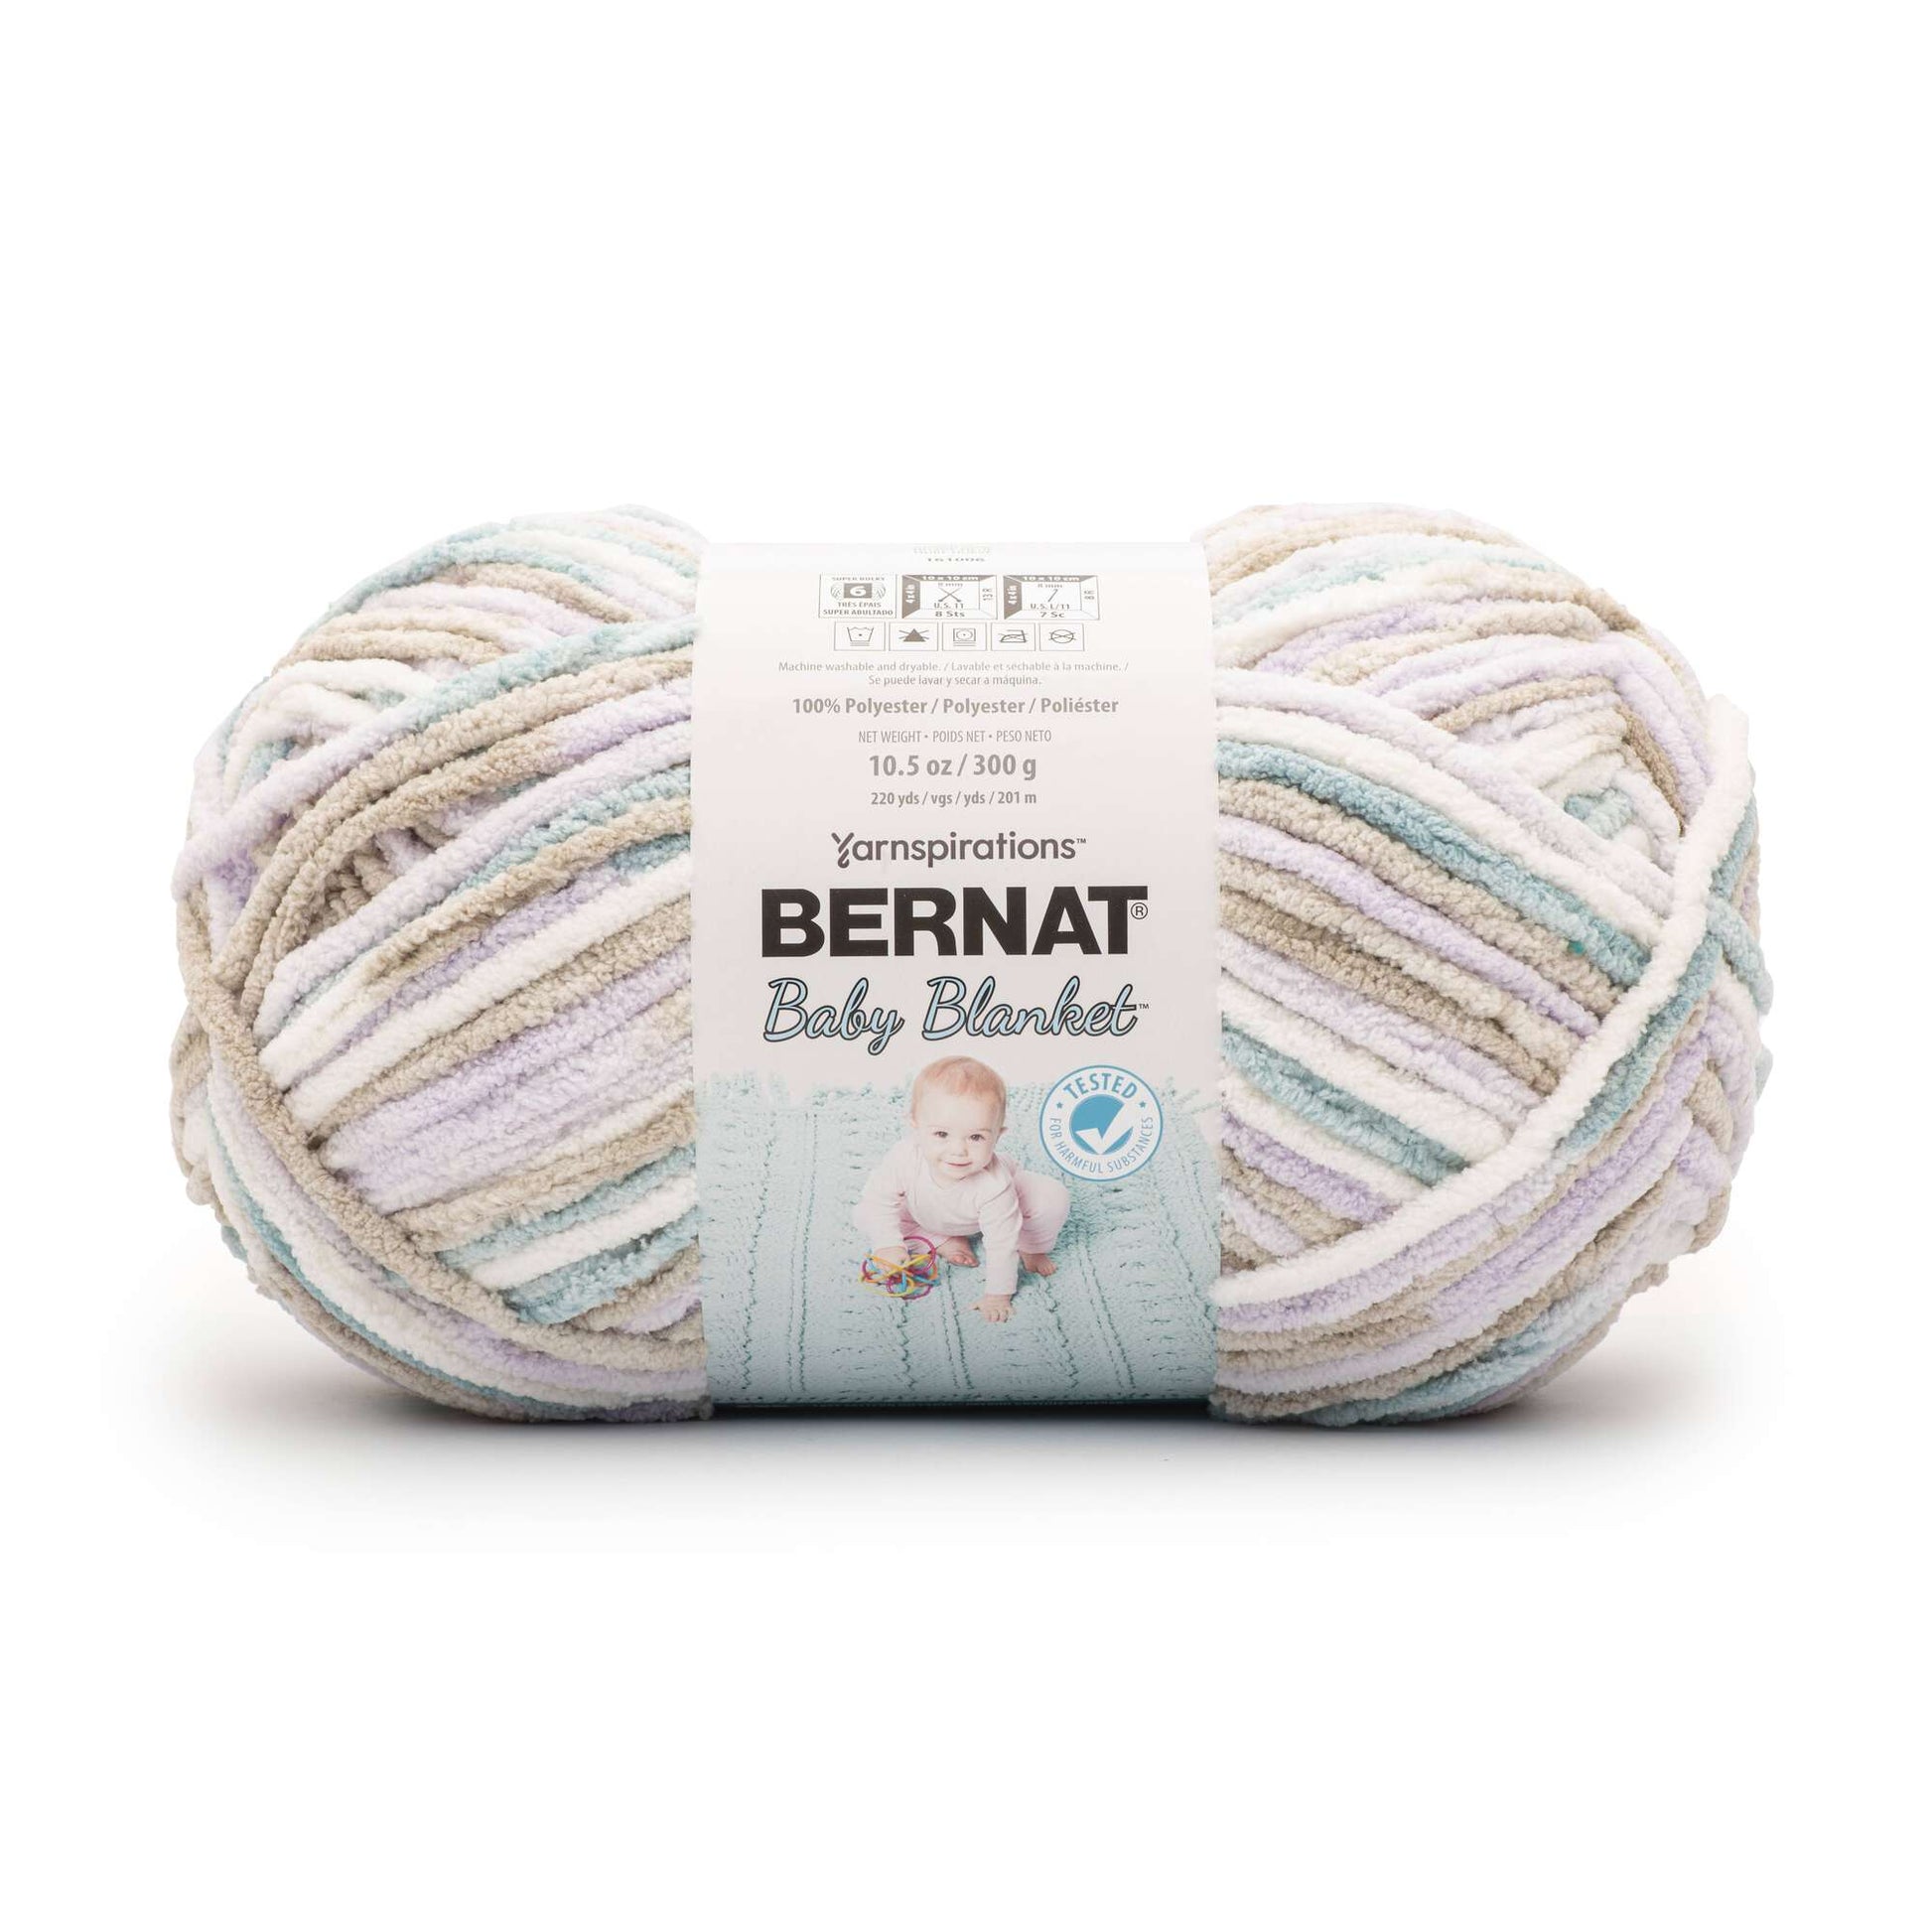  Bernat BABY BLANKET BB Blue Dreams Yarn - 1 Pack of